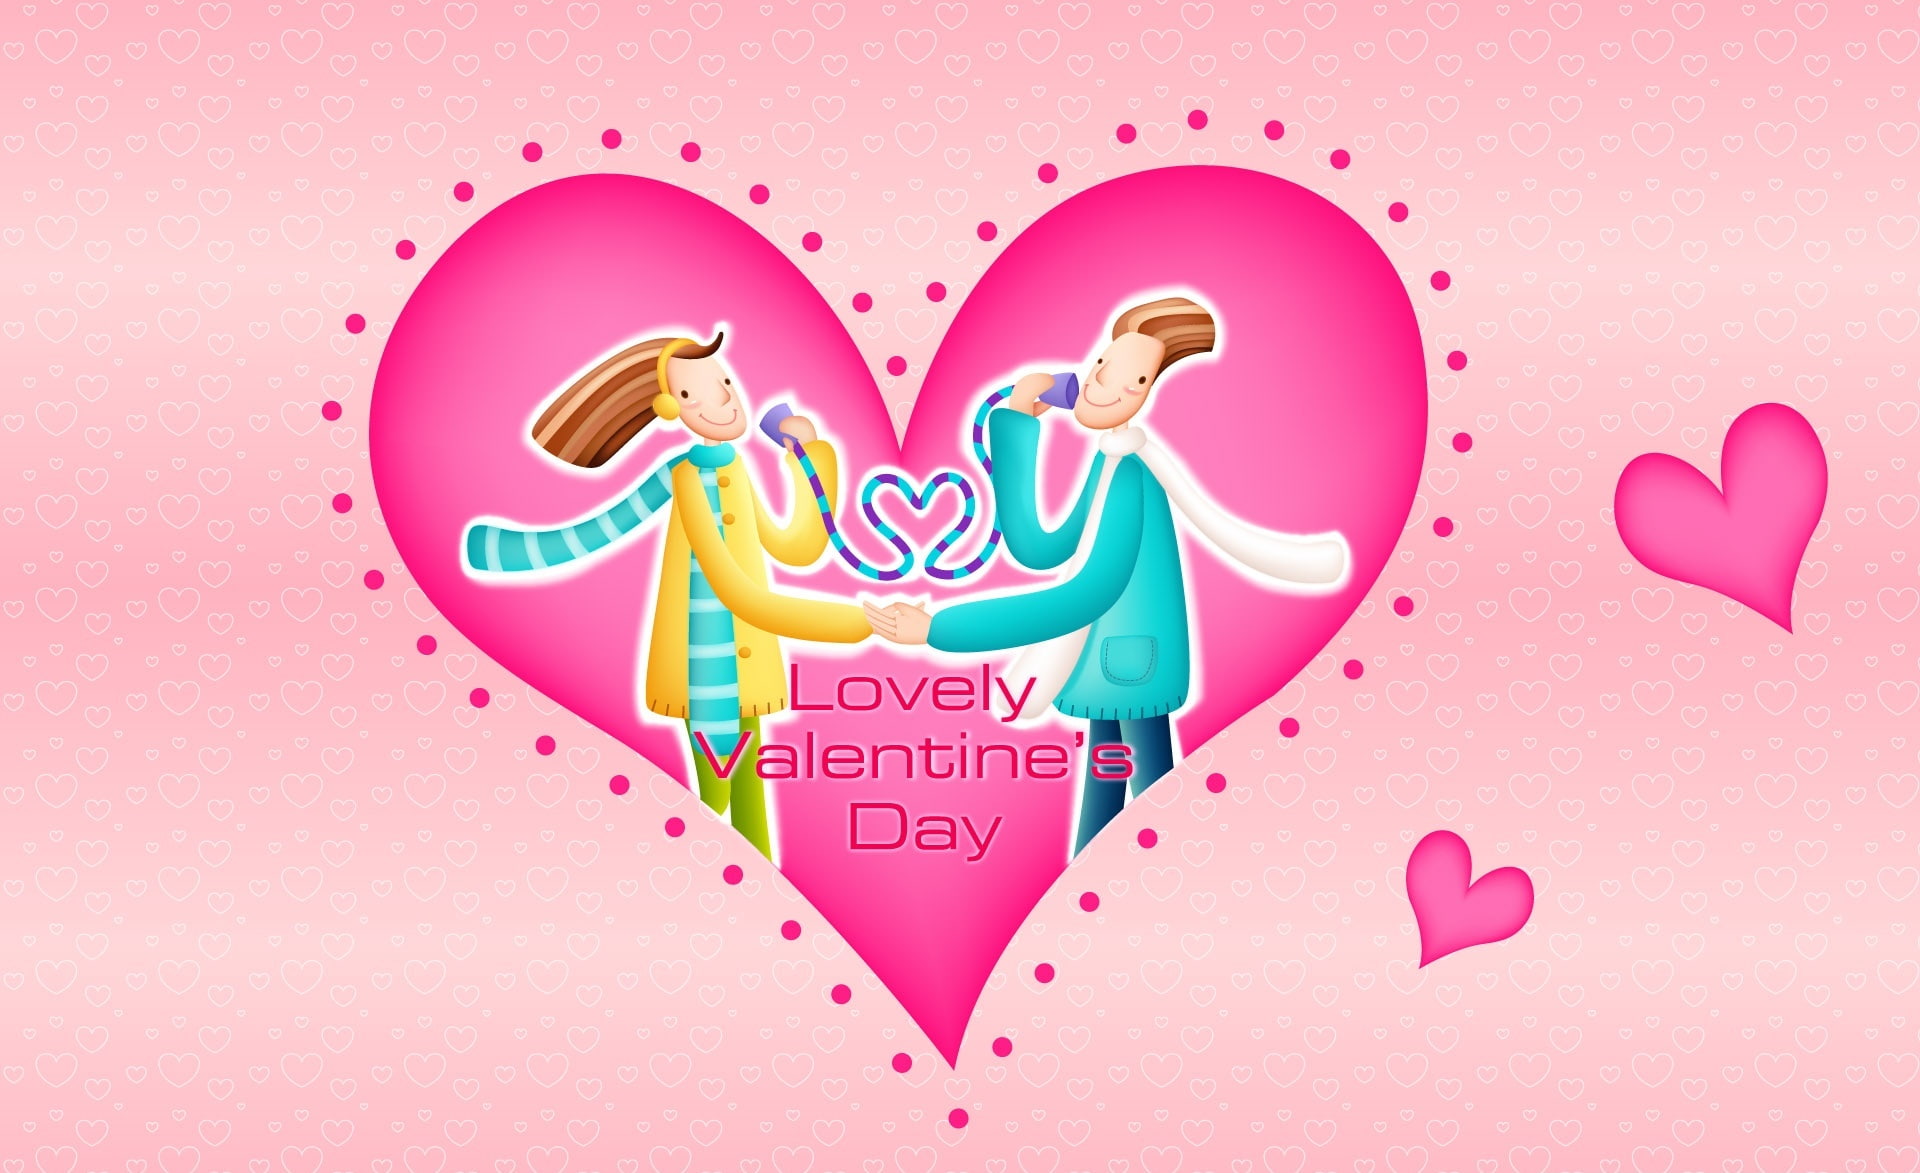 Lovely Valentine's Day, lovely valentine day illustration, Holidays